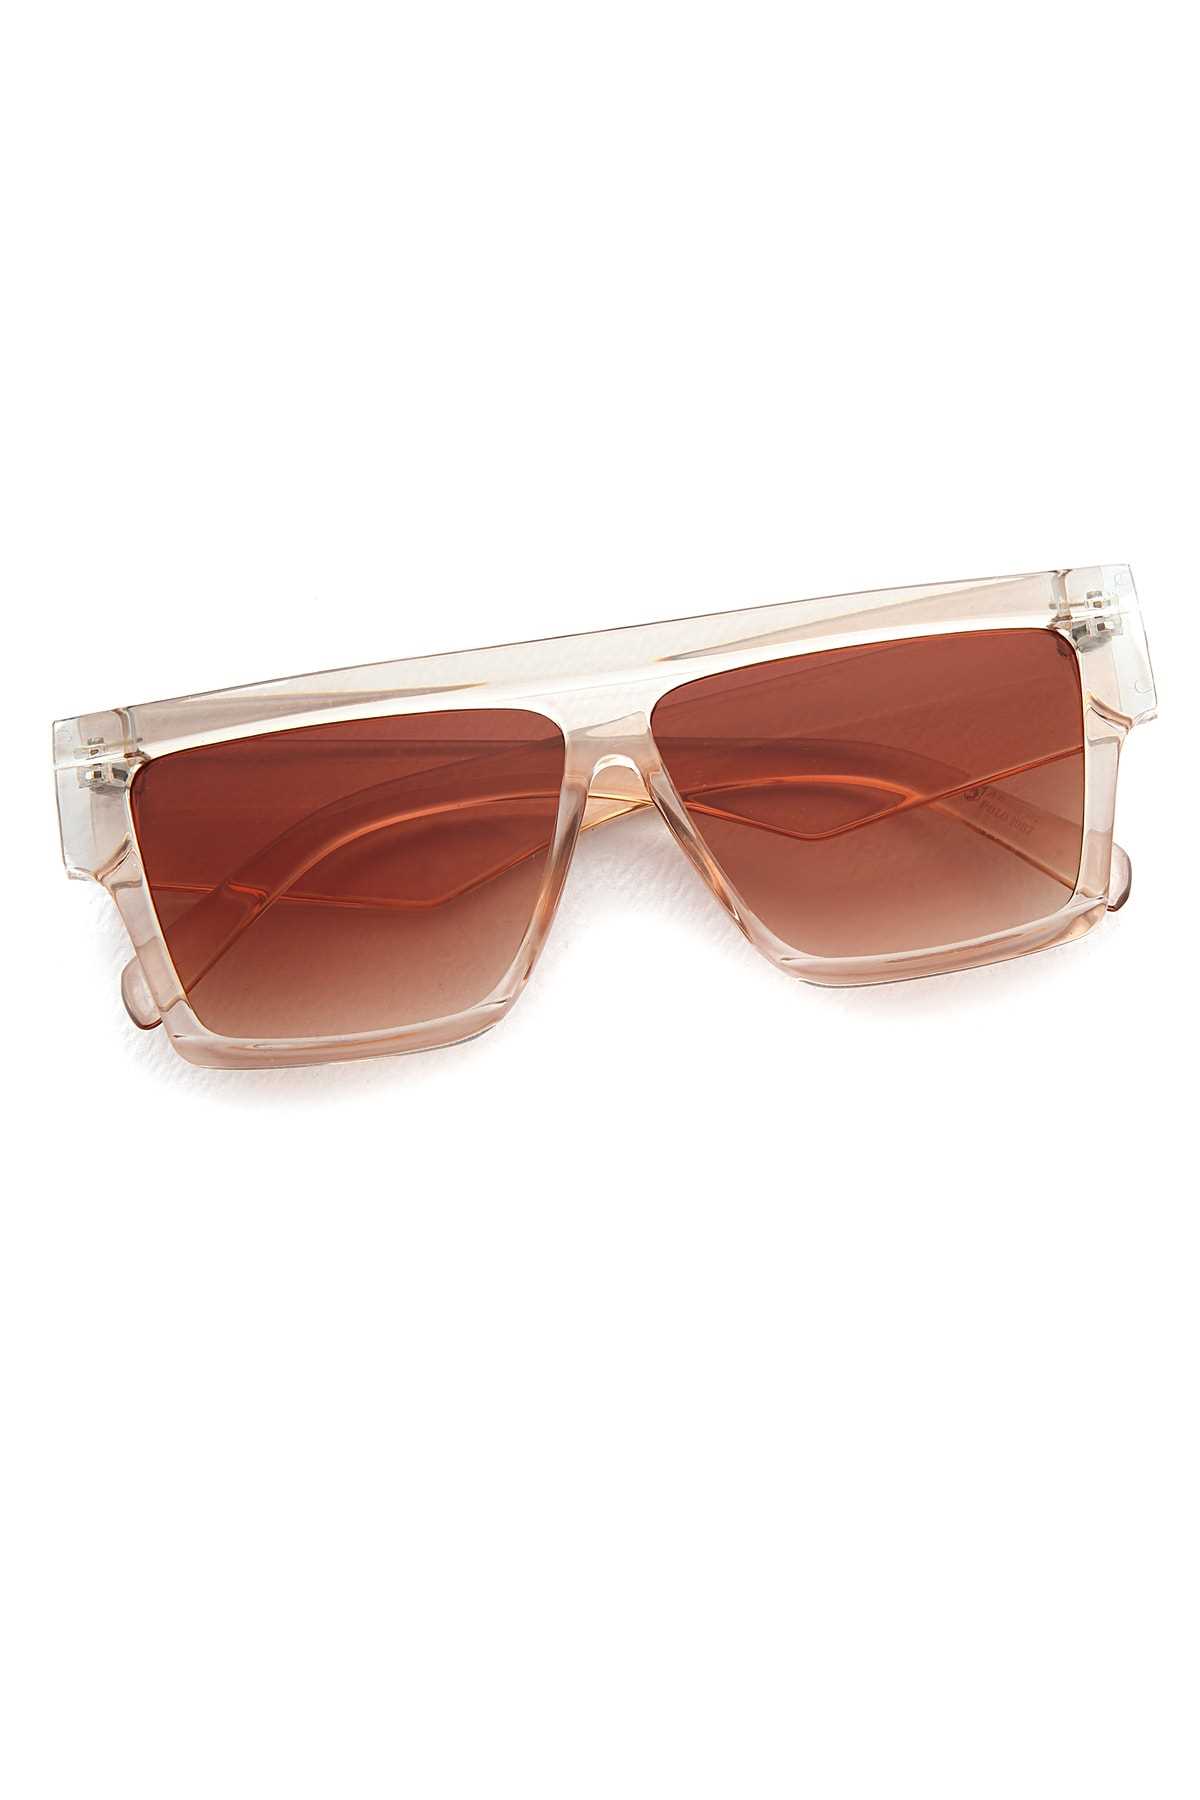 عینک آفتابی زنانه مدل مارک Aqua Di Polo 1987 رنگ قهوه ای کد ty89068433